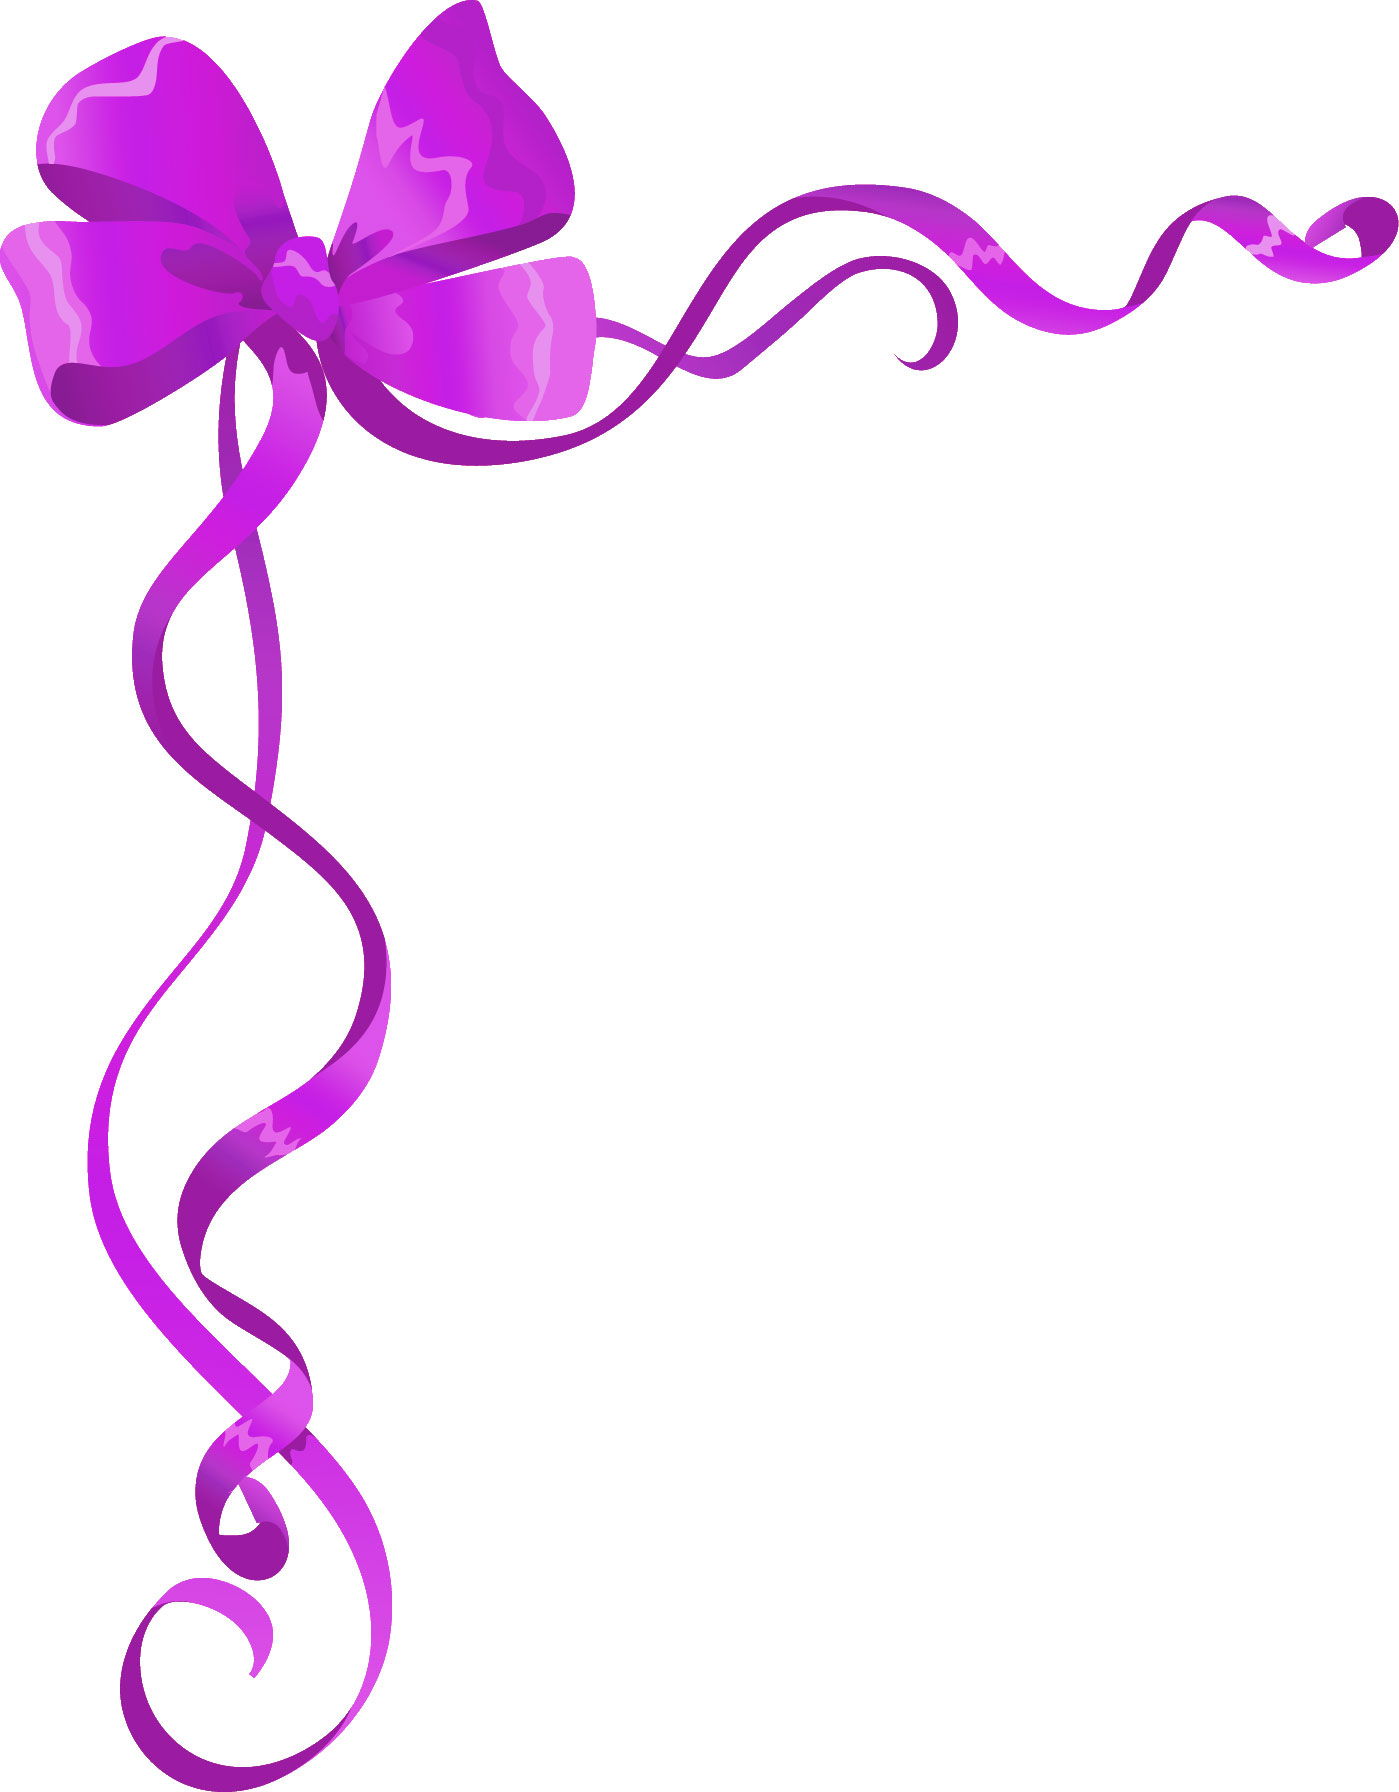 リボンのイラスト 画像 無料素材no 643 紫のコーナーリボン